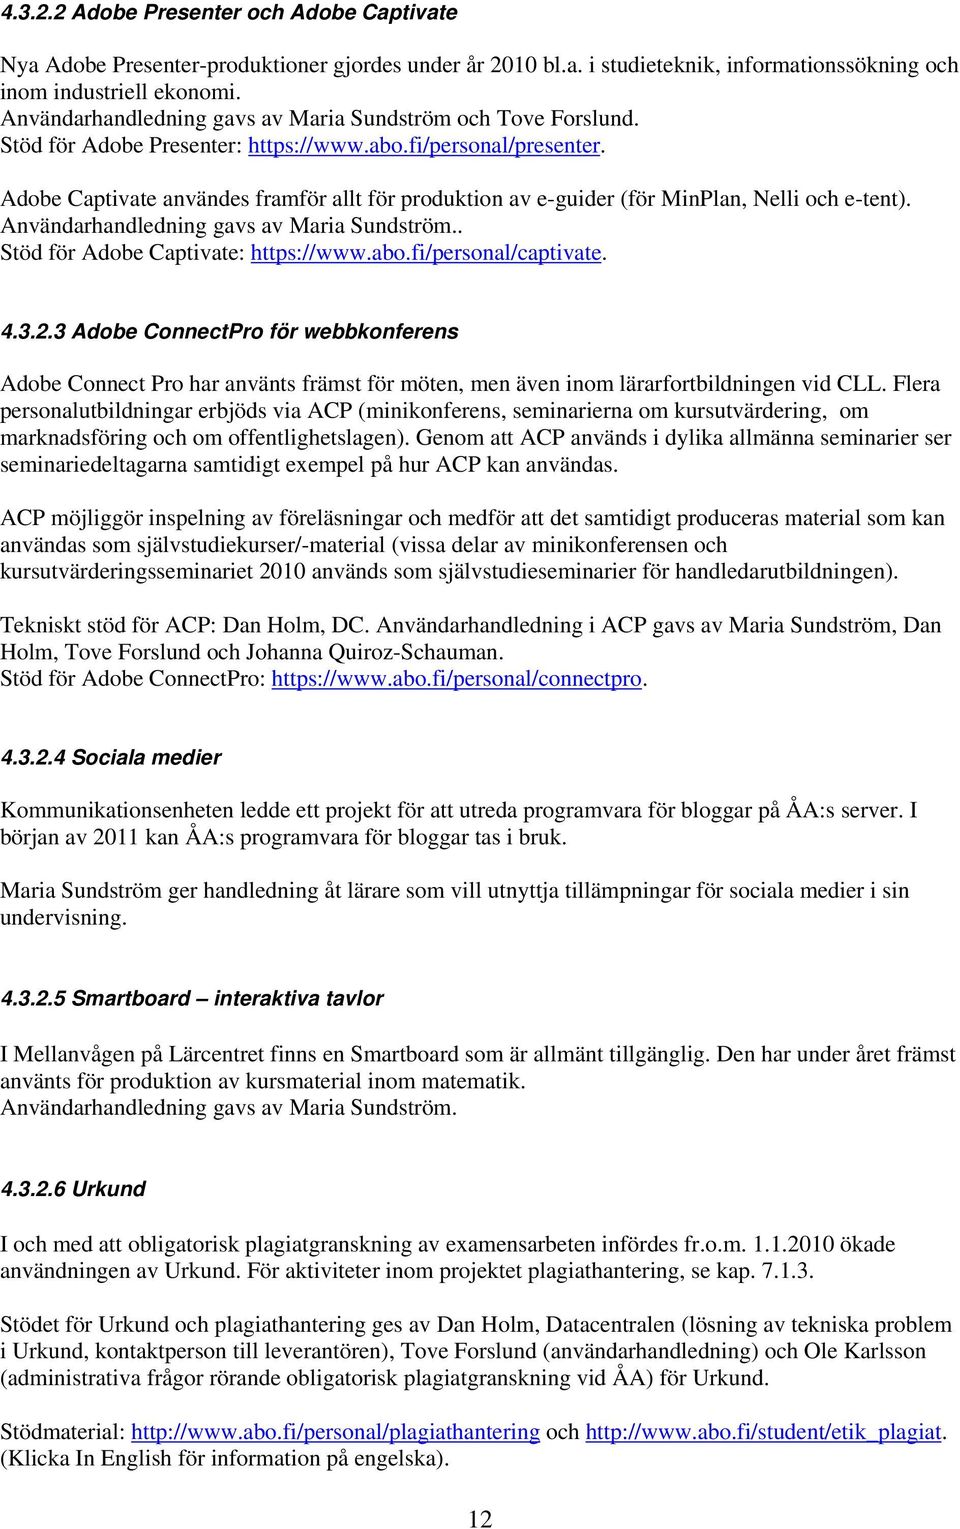 Adobe Captivate användes framför allt för produktion av e-guider (för MinPlan, Nelli och e-tent). Användarhandledning gavs av Maria Sundström.. Stöd för Adobe Captivate: https://www.abo.